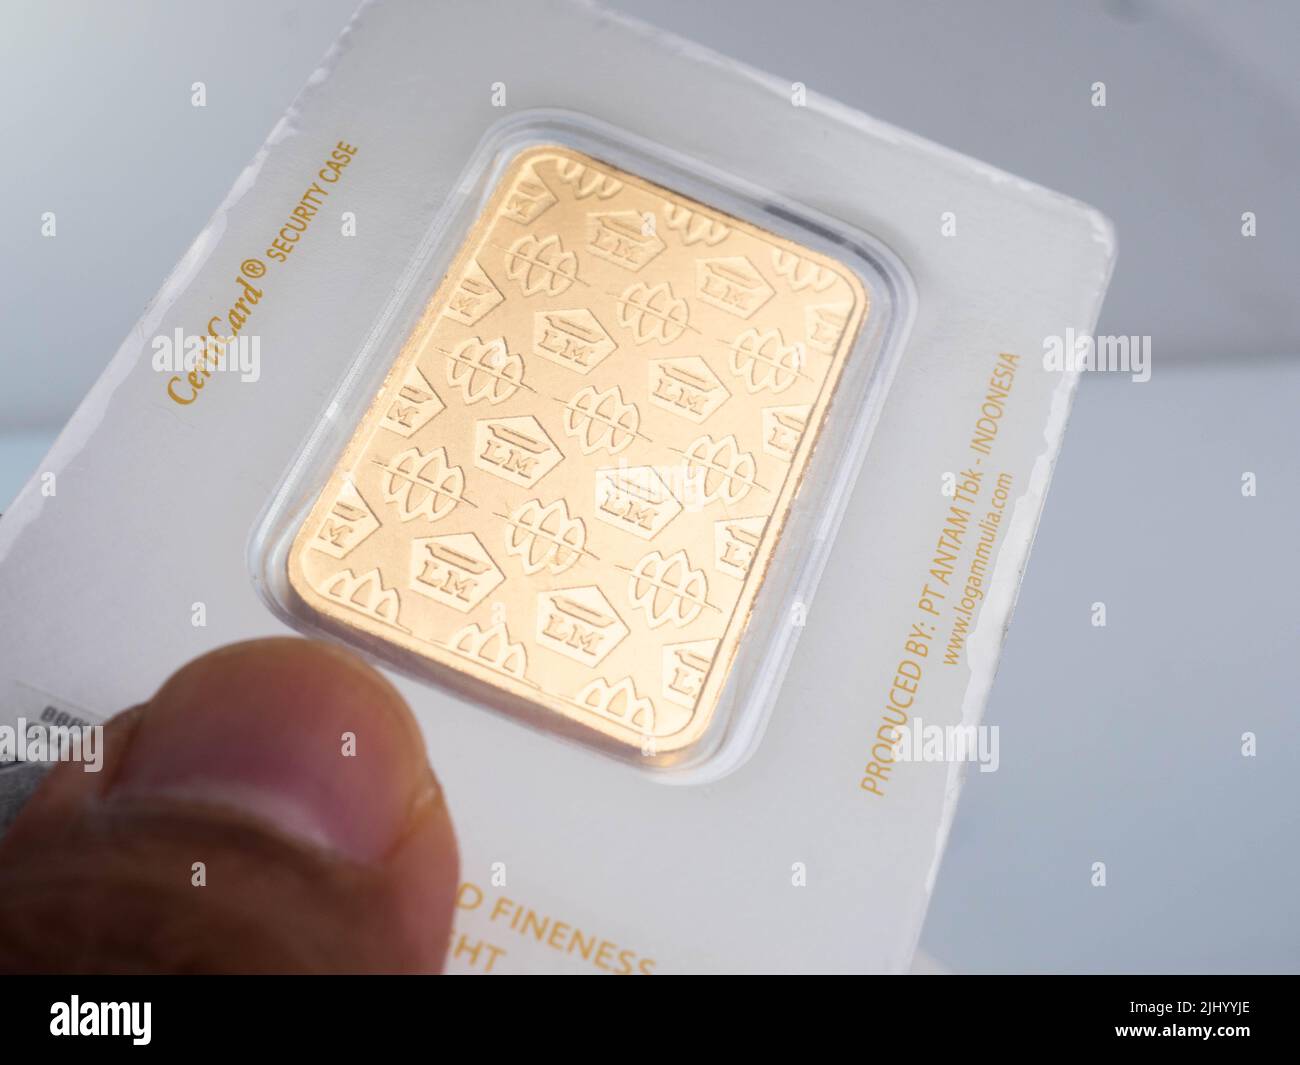 Jakarta, 30 mai 2022, photos de 999 24k barres d'or avec emballage de certieye, produit par PT Aneka Tambang (ANTAM) qui se trouve en Indonésie Banque D'Images